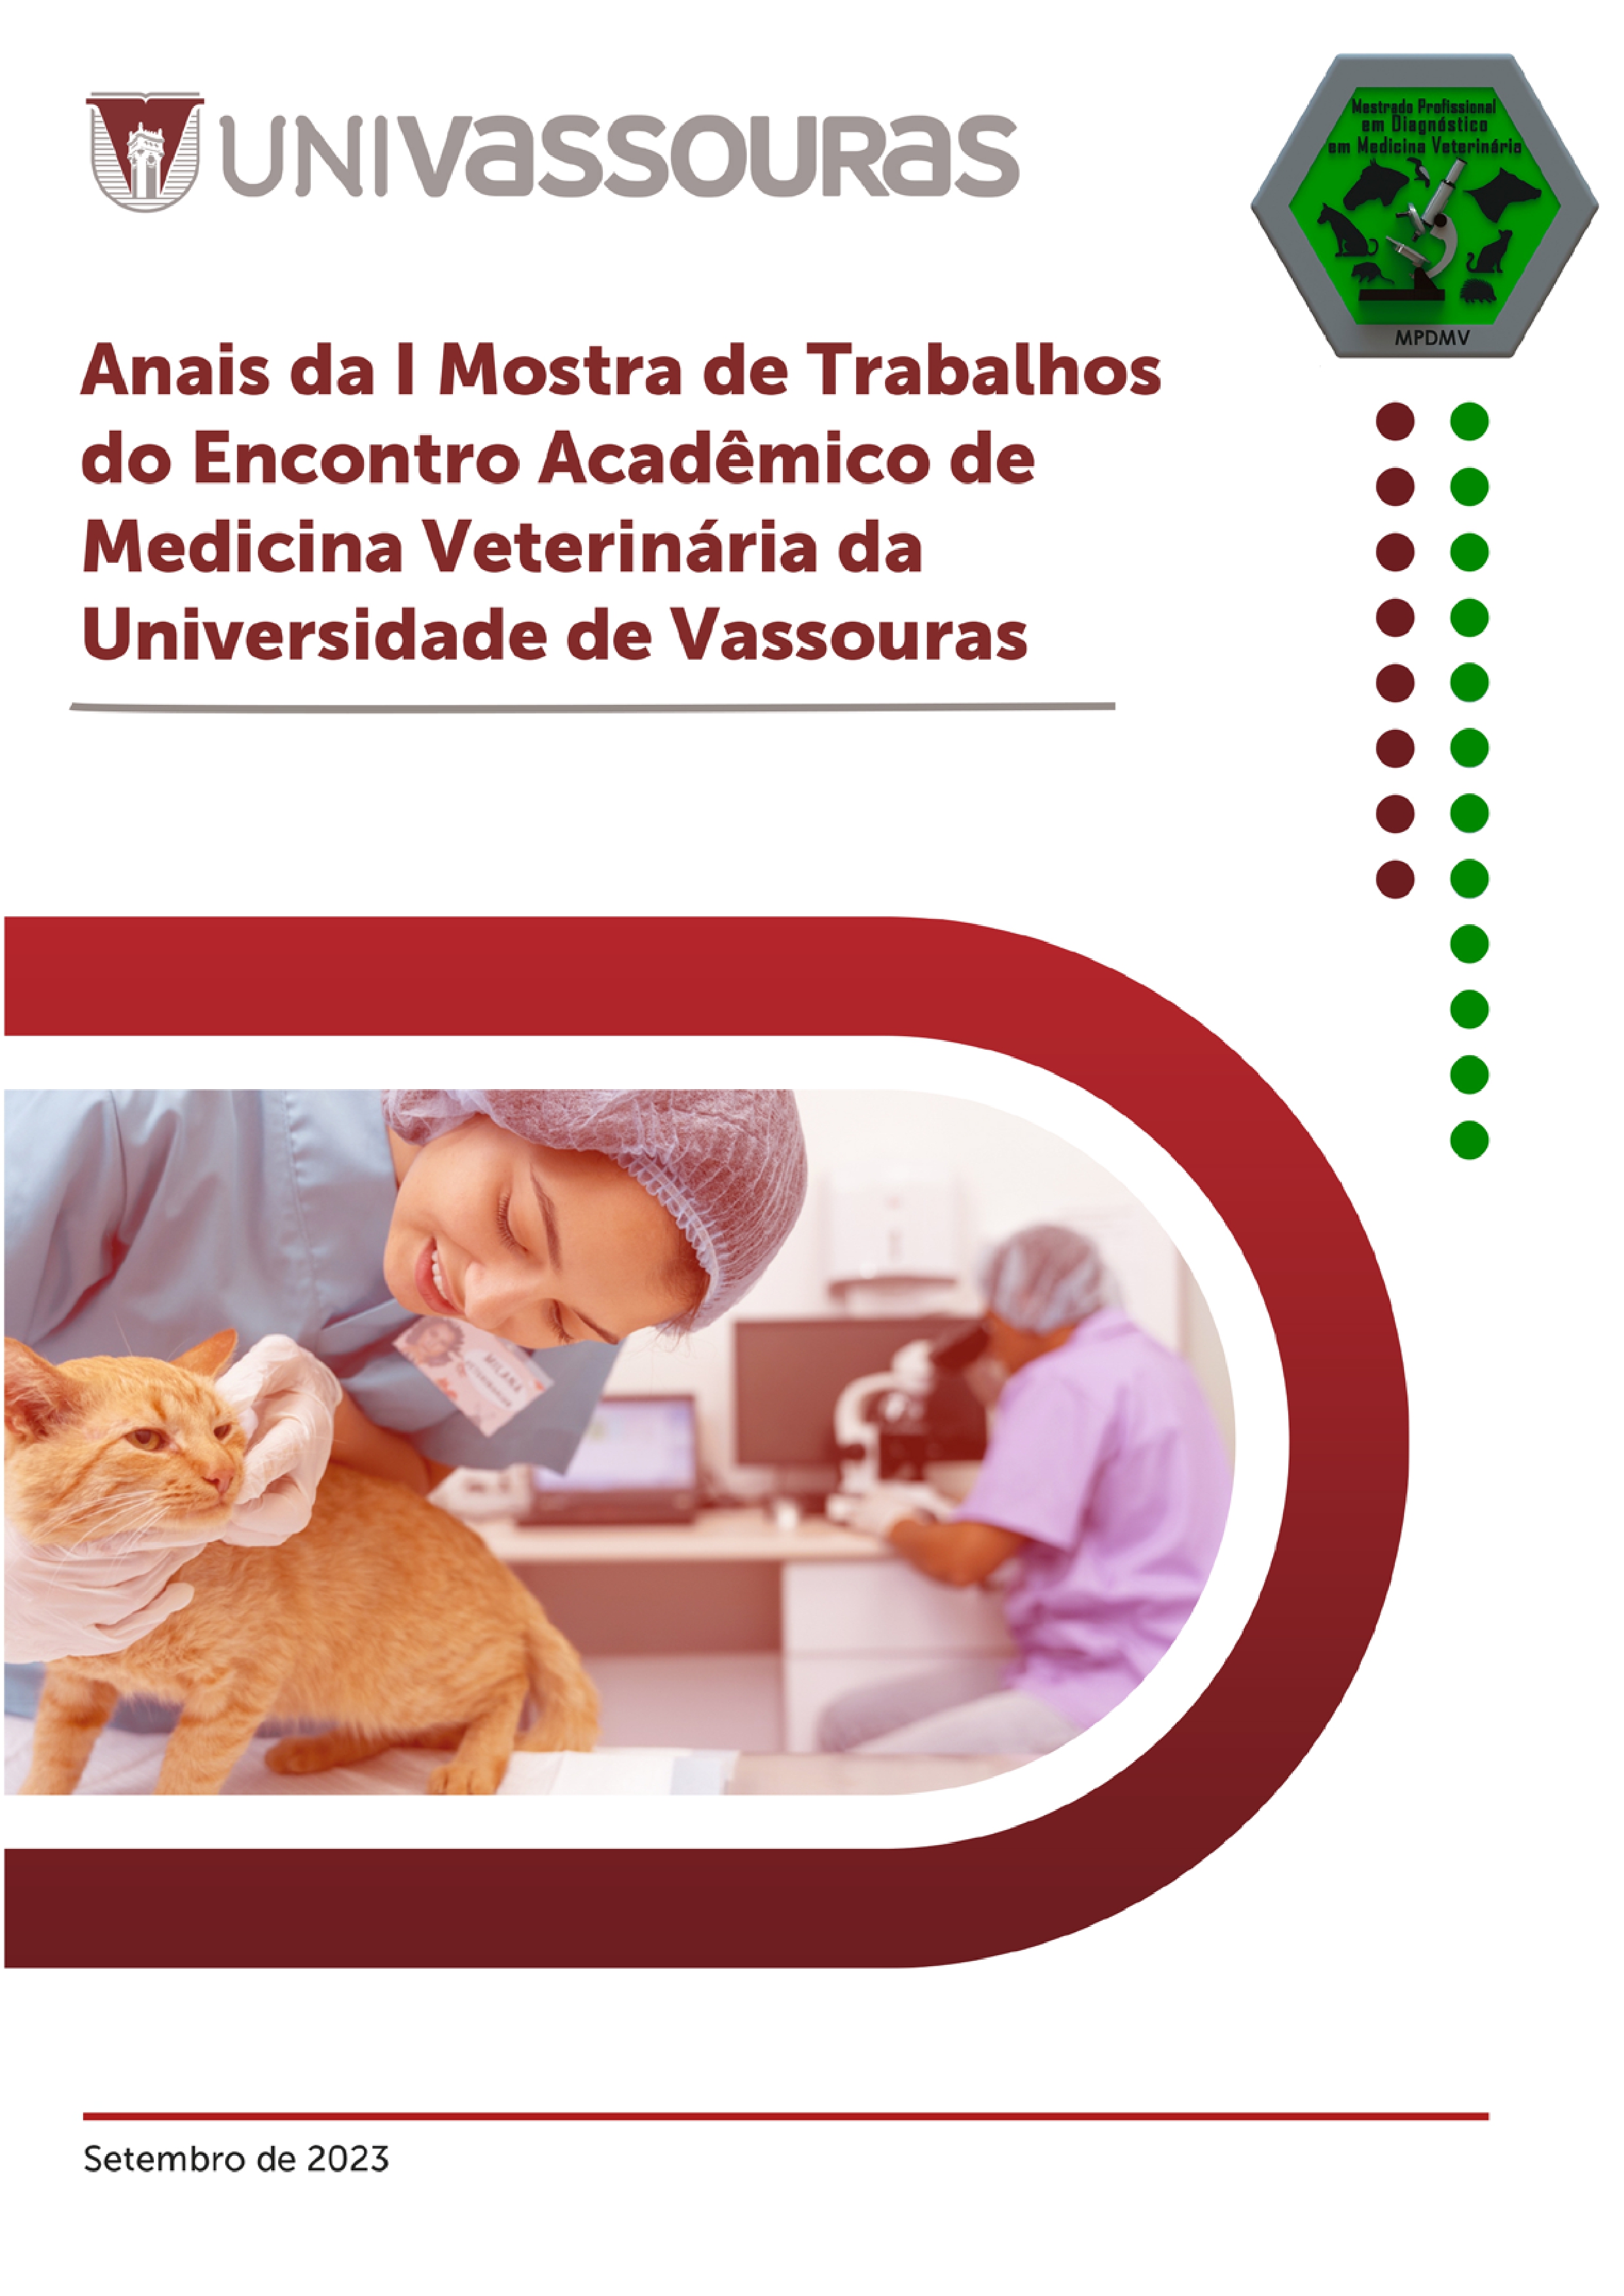 					View 2023: Anais da I Mostra de Trabalhos do Encontro Acadêmico de Medicina Veterinária da Universidade de Vassouras 
				